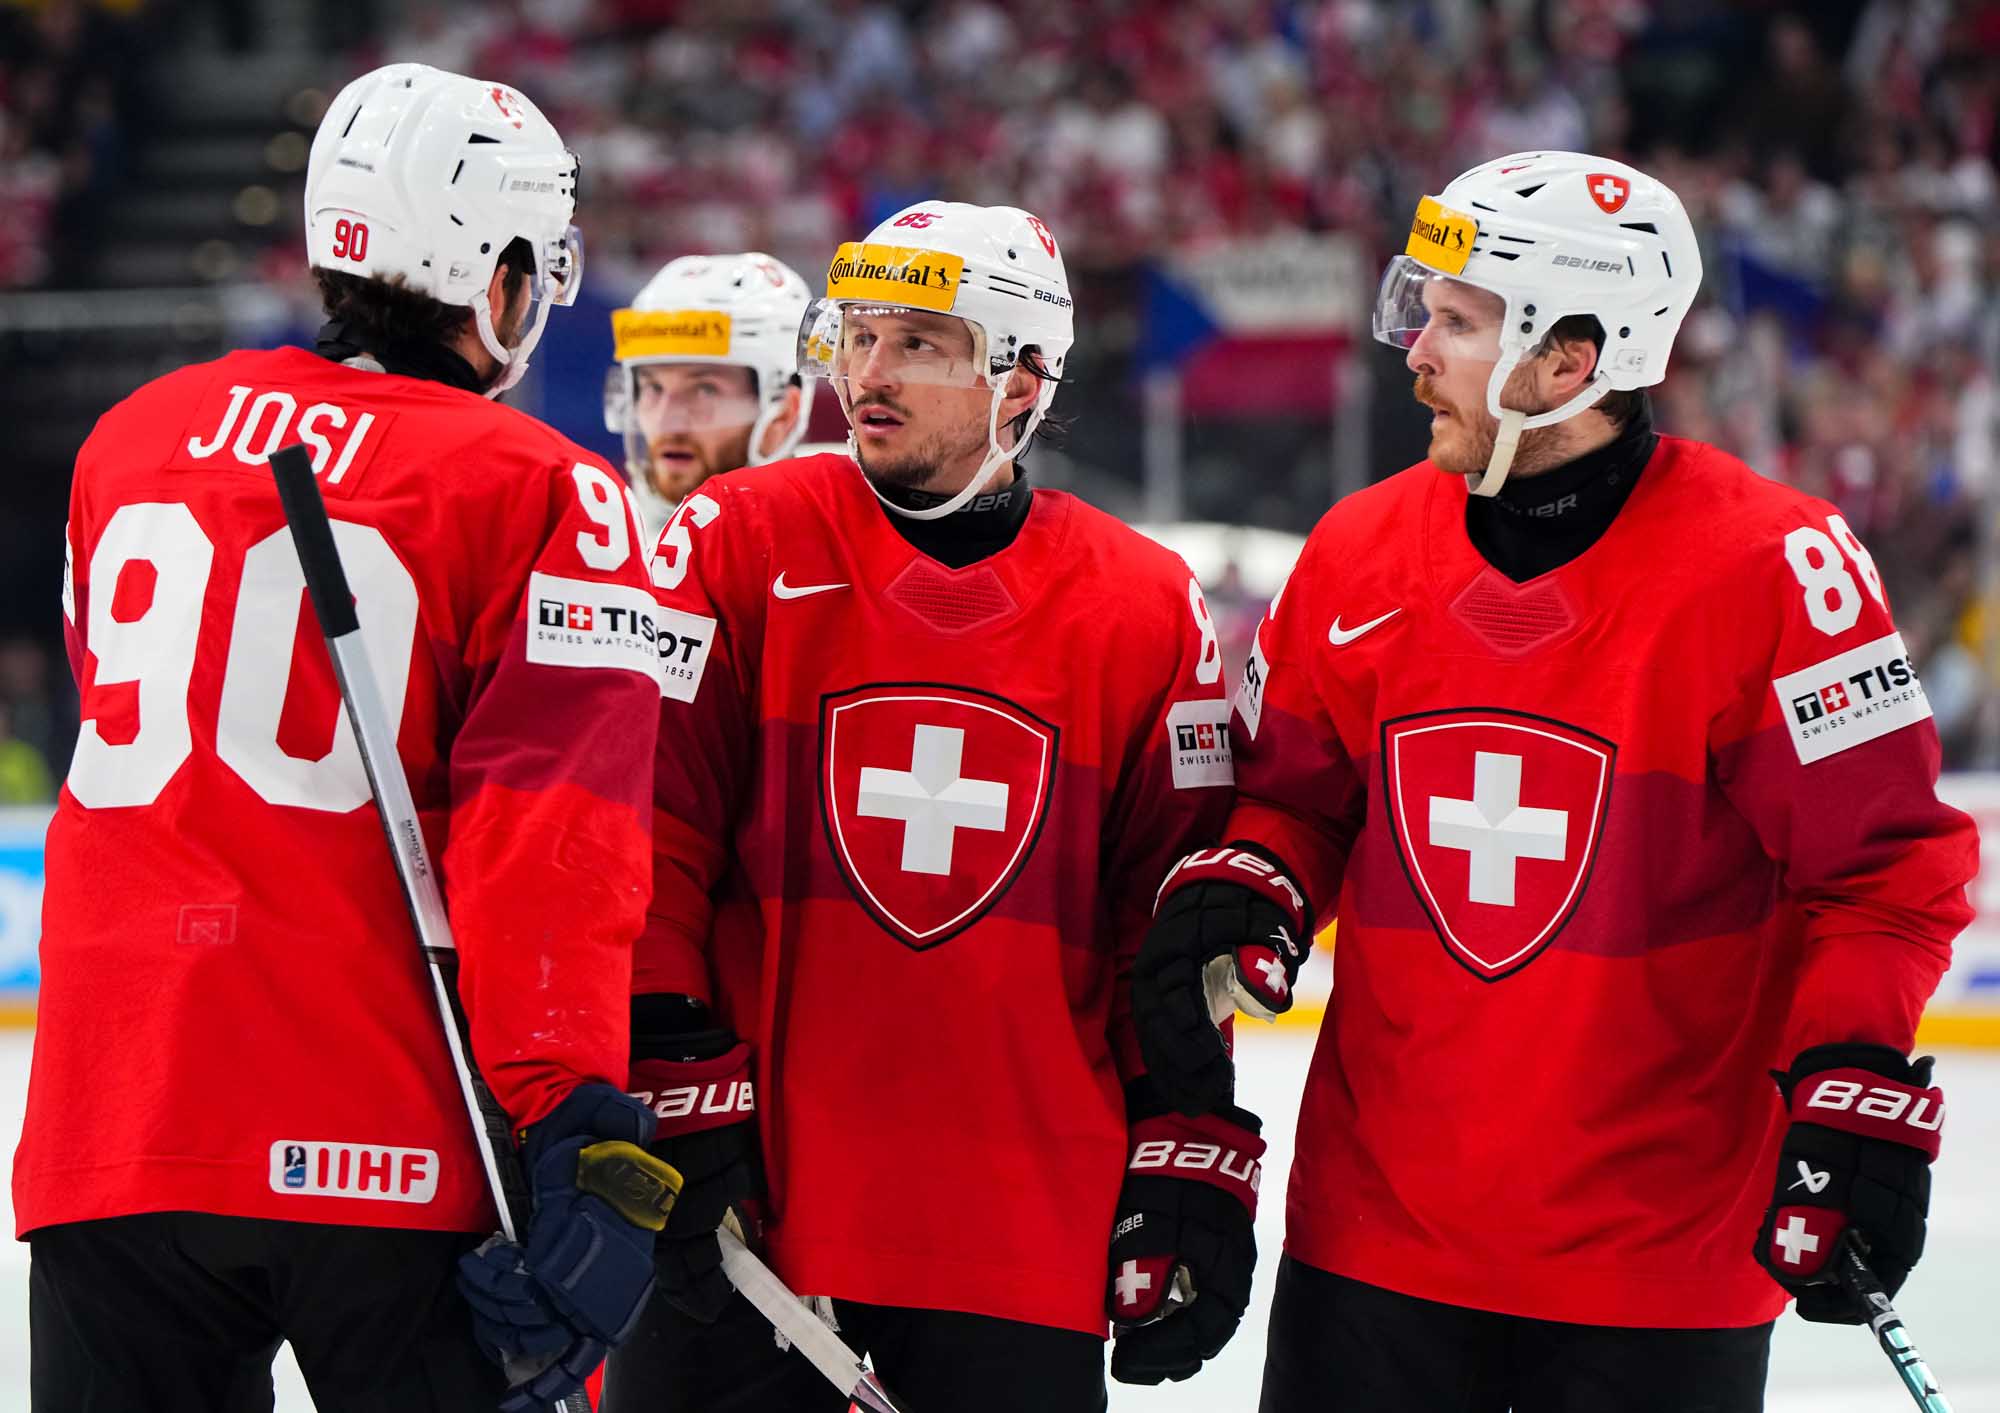 IIHF - Czechs strike gold on home ice